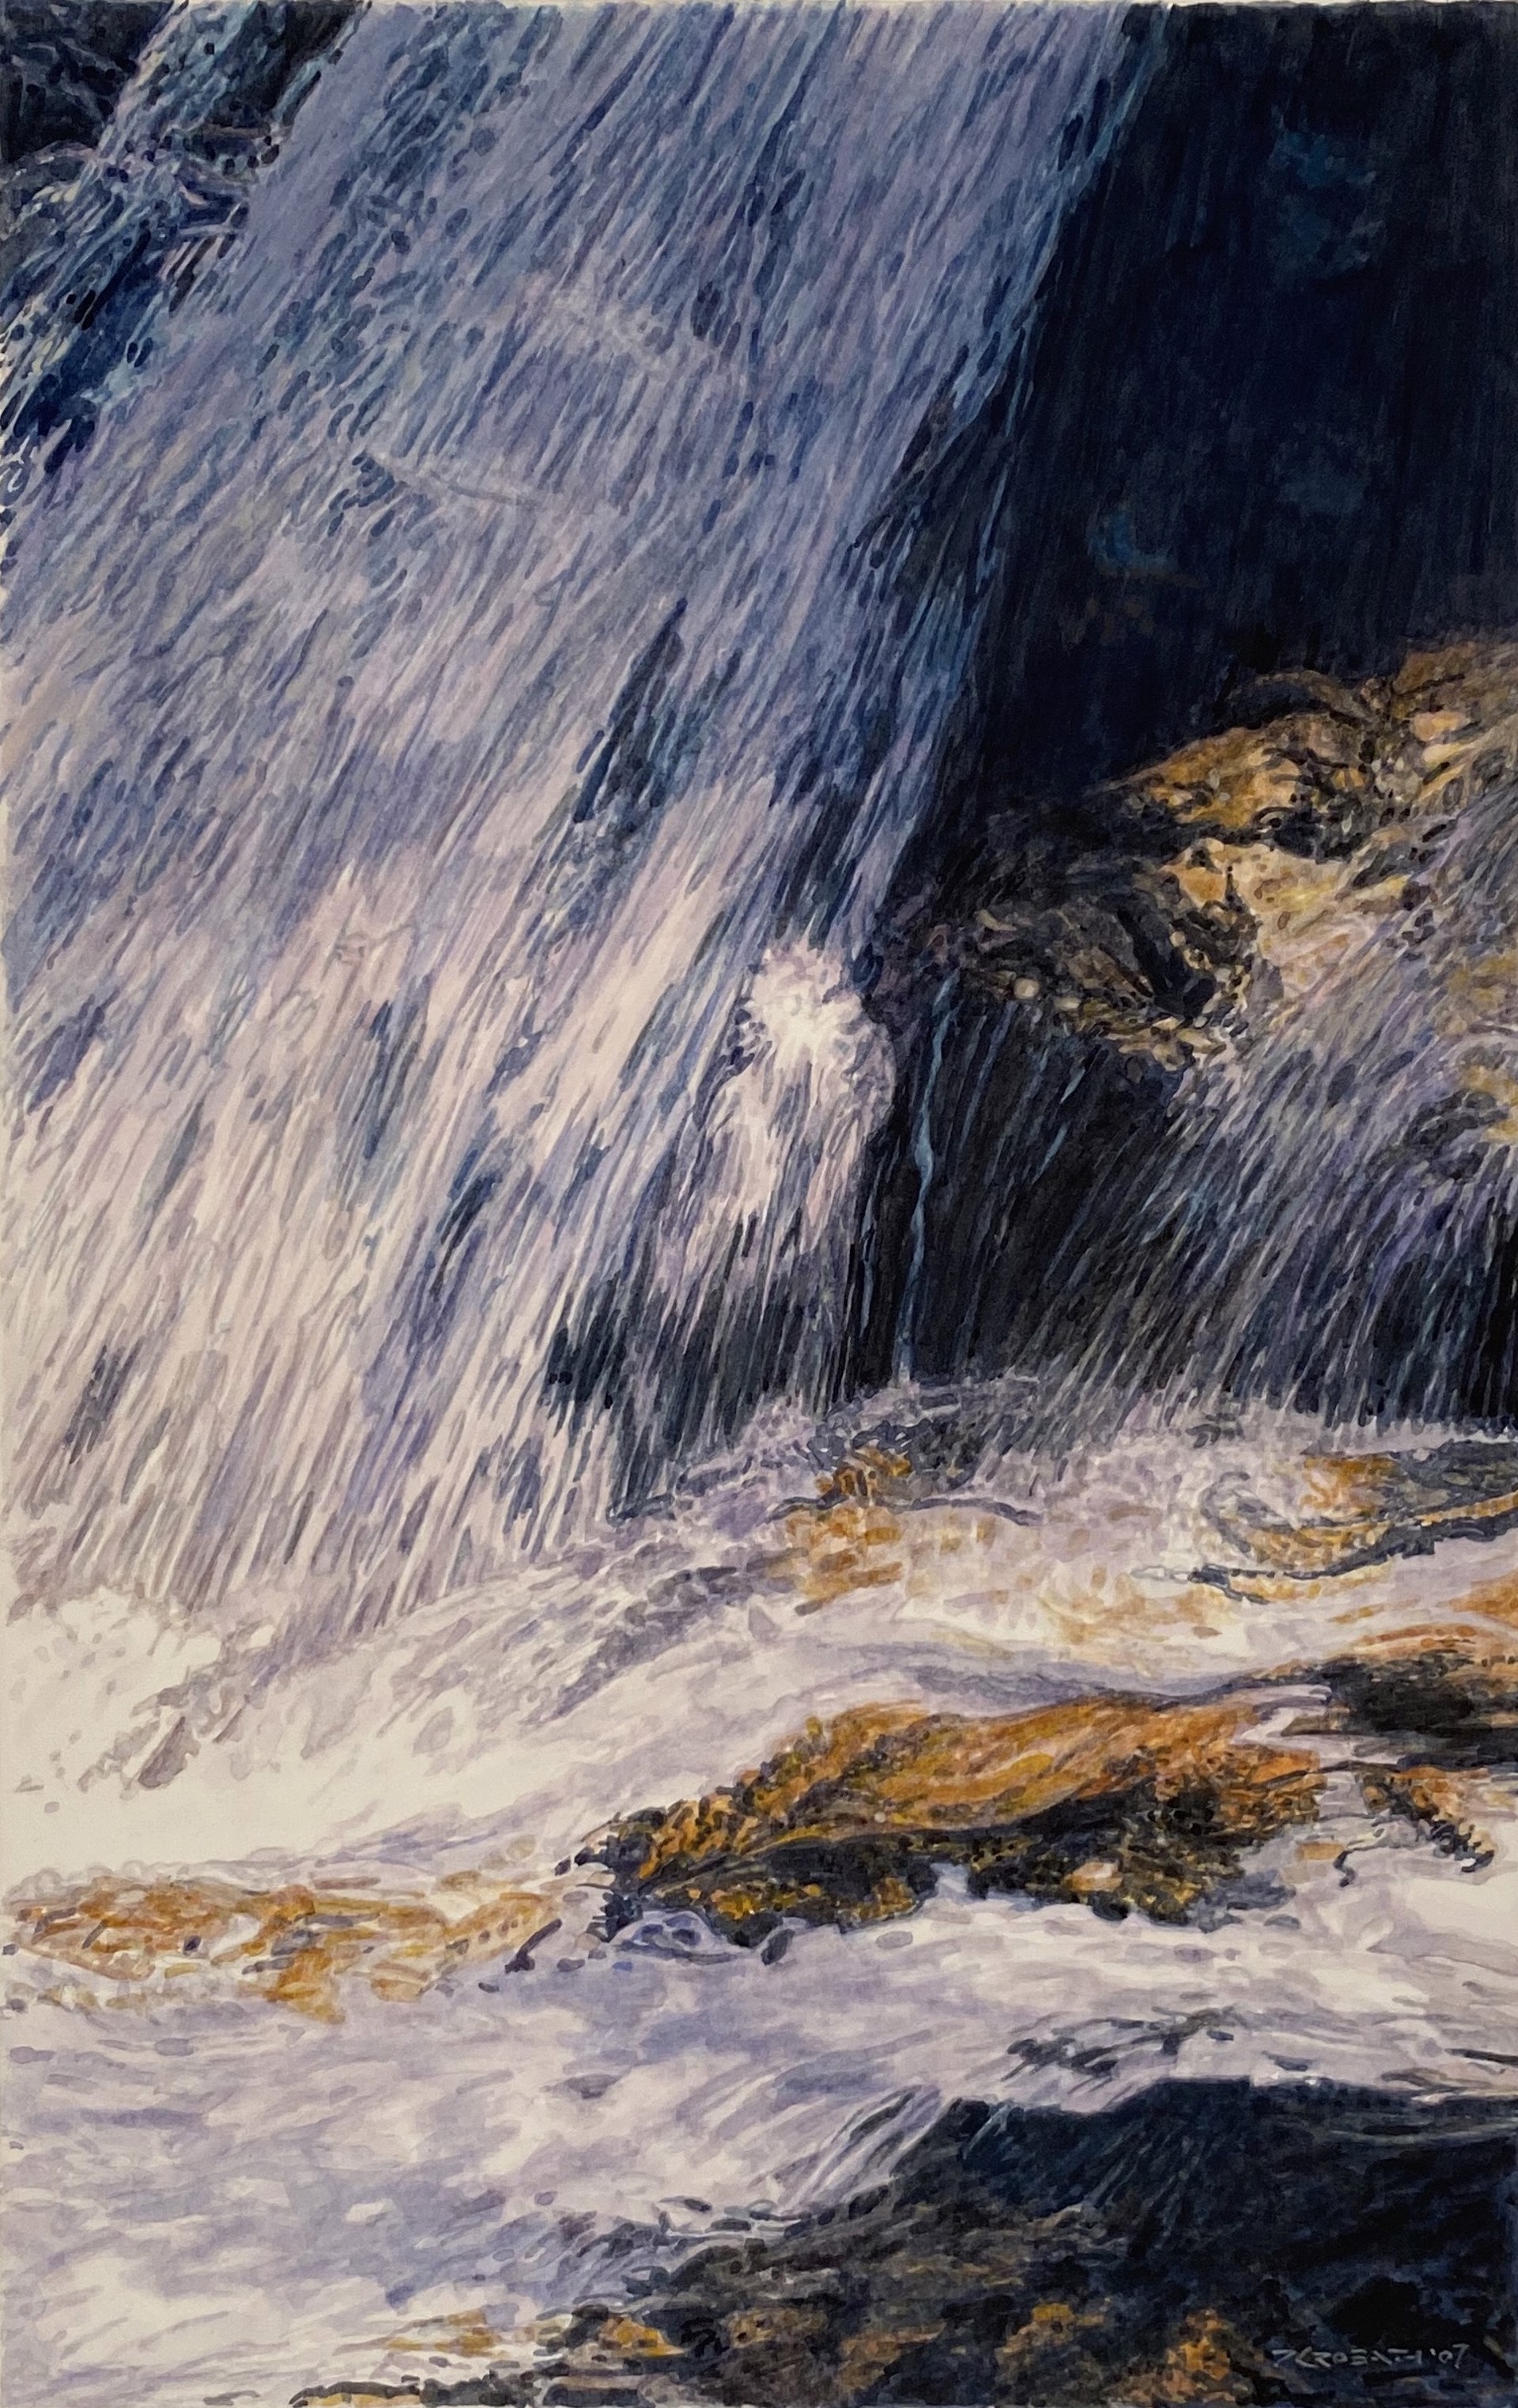 Beside the Falls II by Peter Krobath